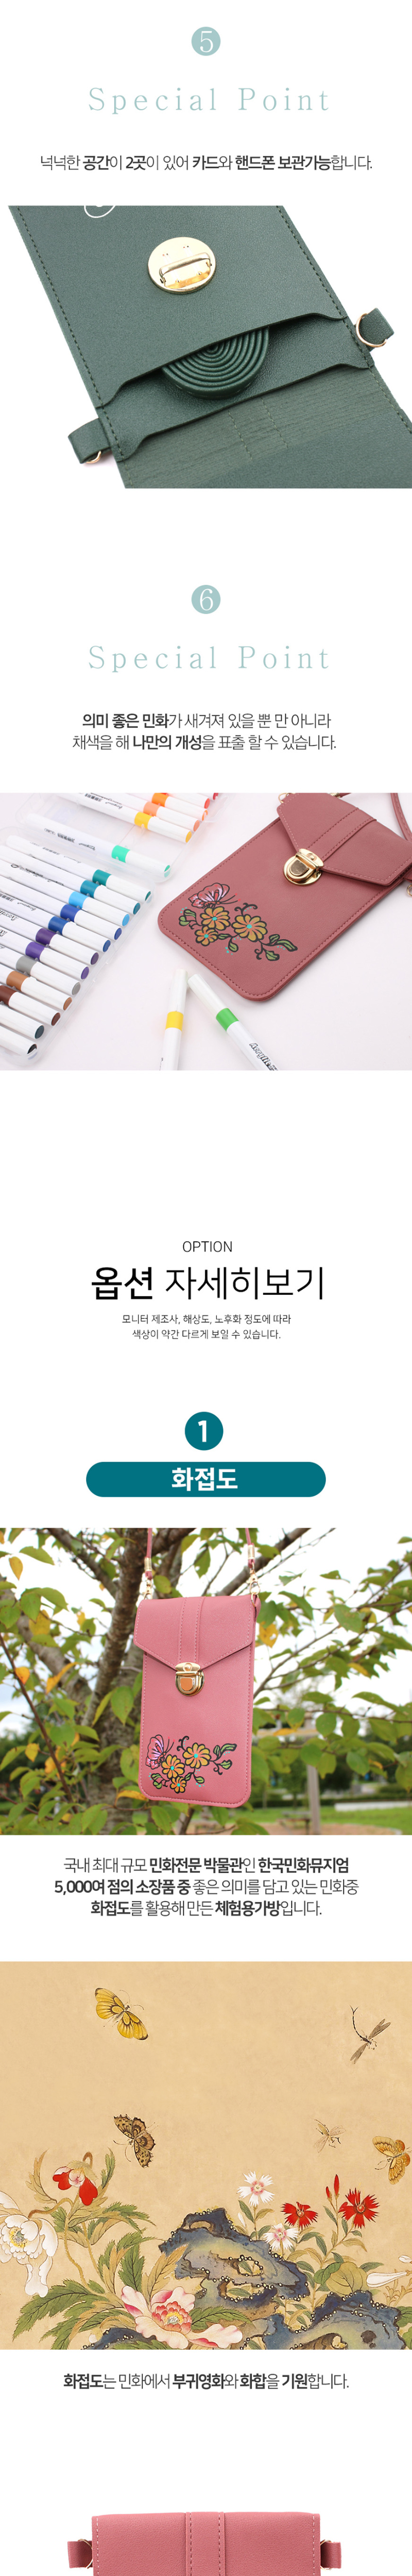 율아트 민화 핸드폰 지갑 옵션 소개